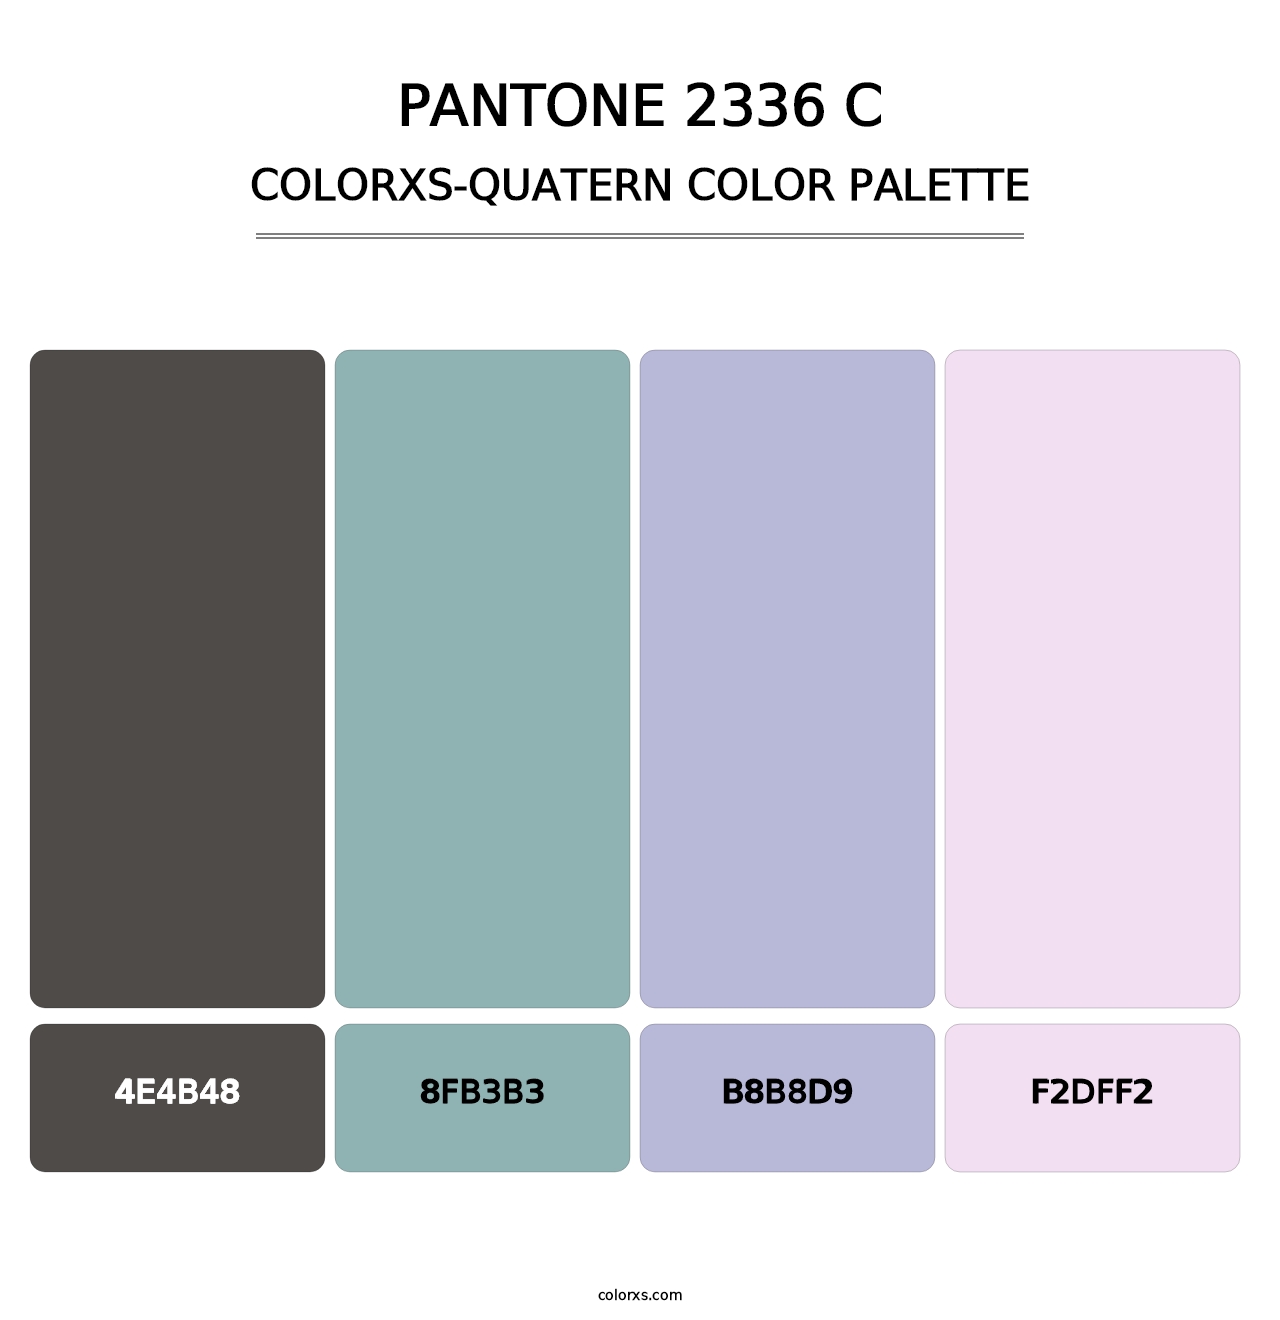 PANTONE 2336 C - Colorxs Quatern Palette